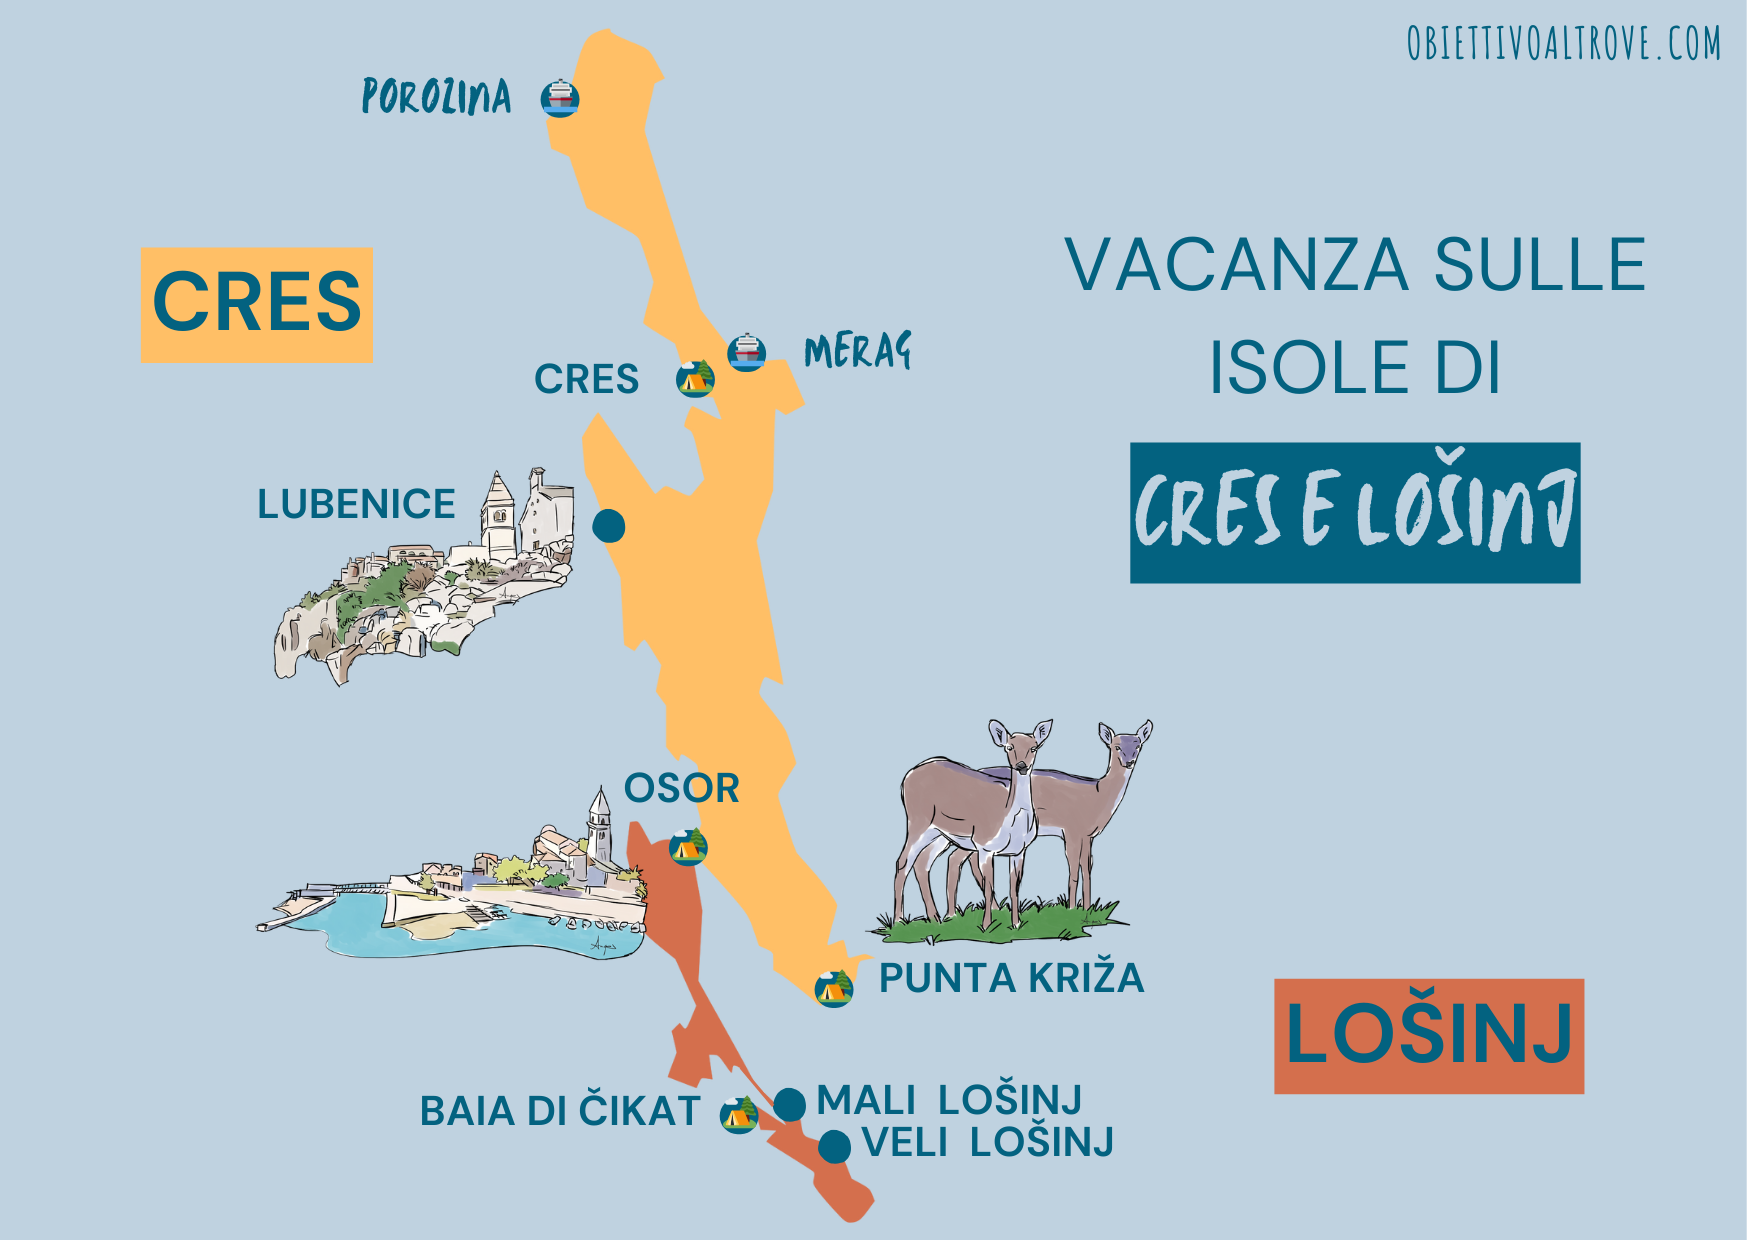 Mappa vacanza nelle isole di Cres e Lošinj